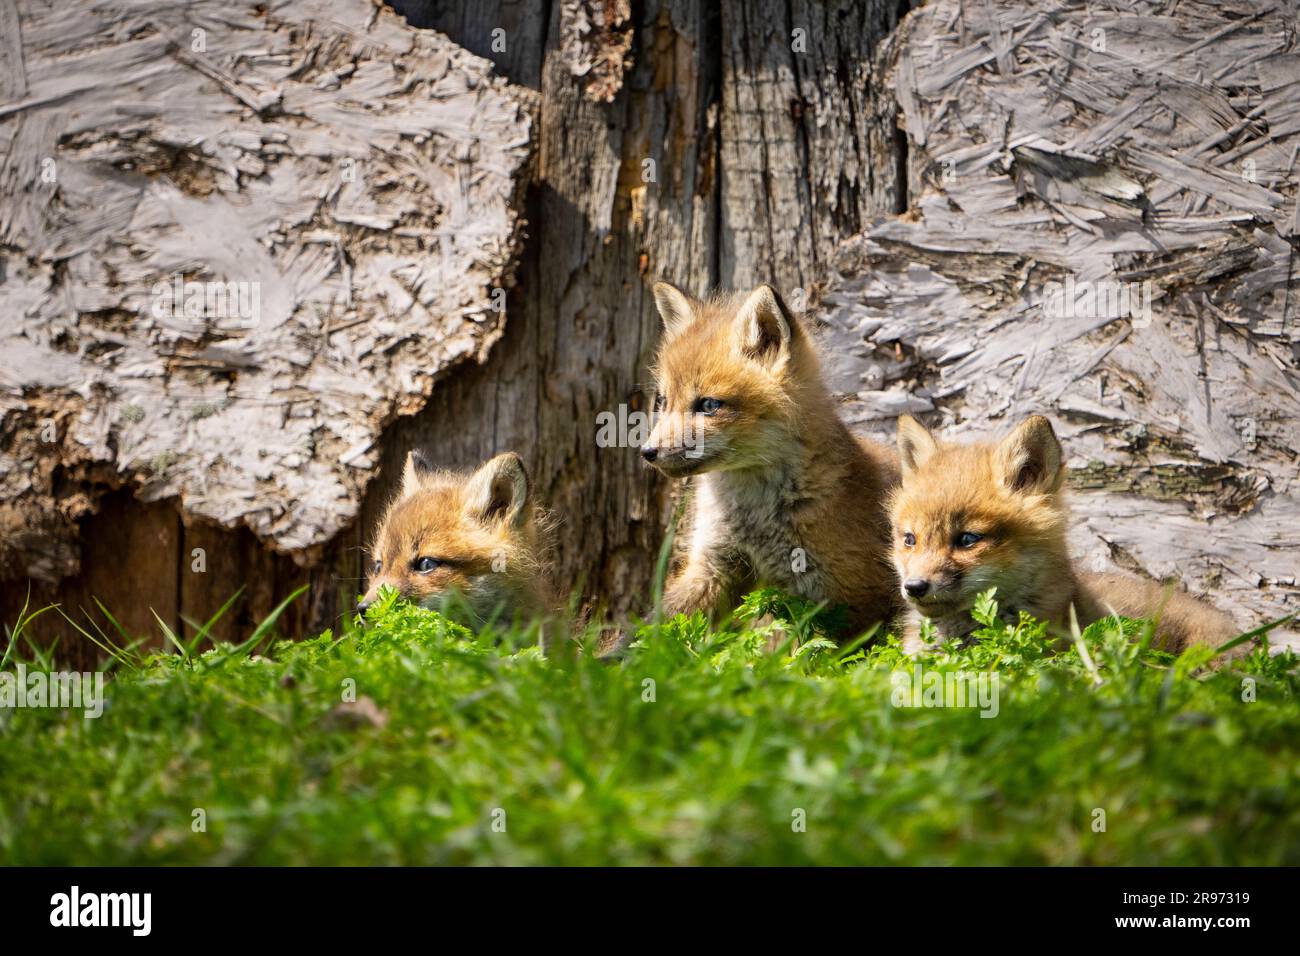 Cuccioli di volpe rosse che riposano nella loro tana in una casa abbandonata in primavera. Foto Stock